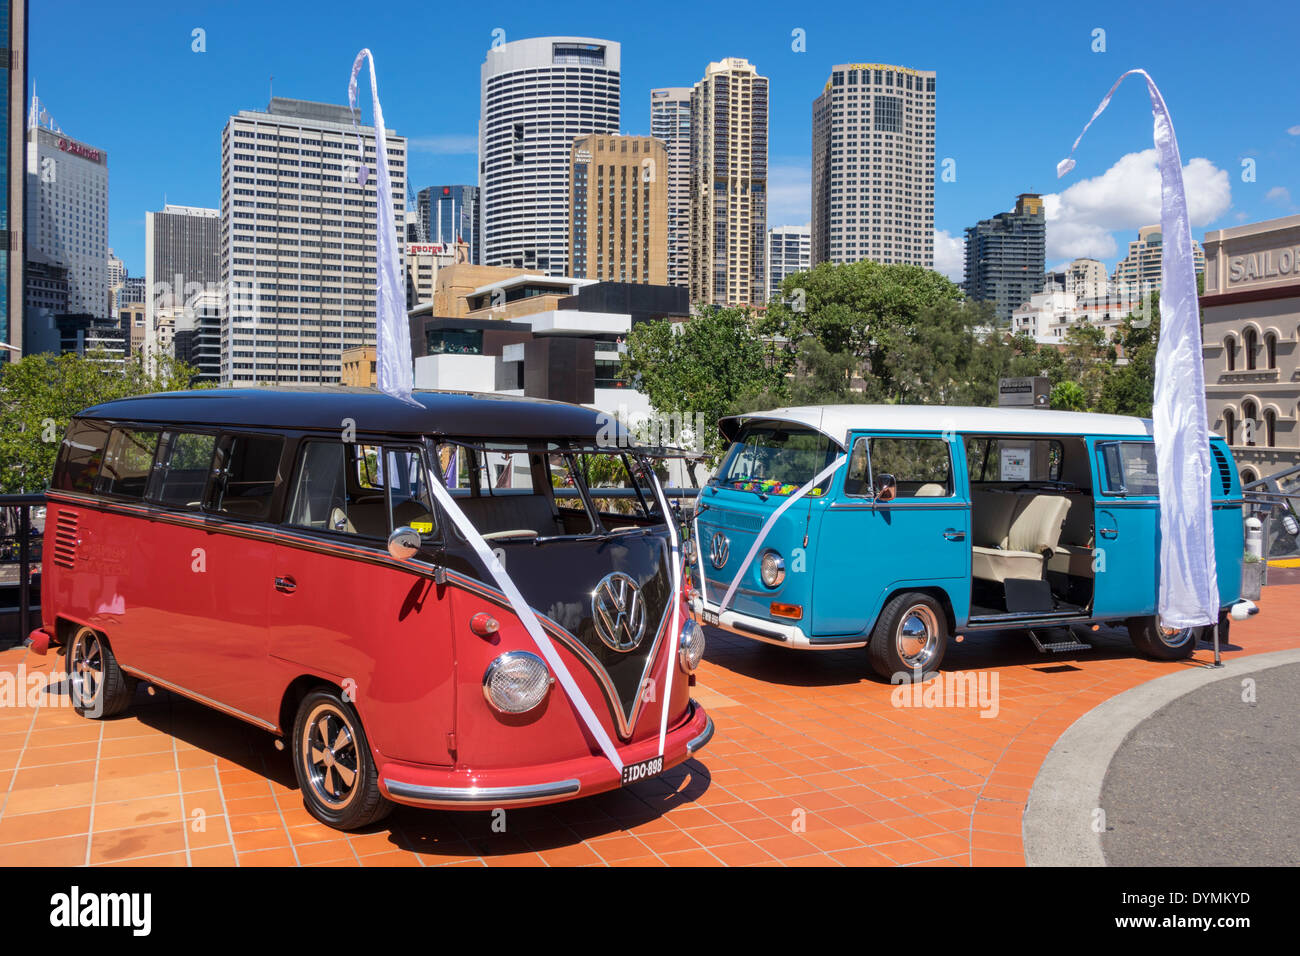 Sydney Australie,Circular Quay,gratte-ciel,ville Skyline,VW,Volkswagen,mini-van,classique,antique,véhicule,AU140308111 Banque D'Images